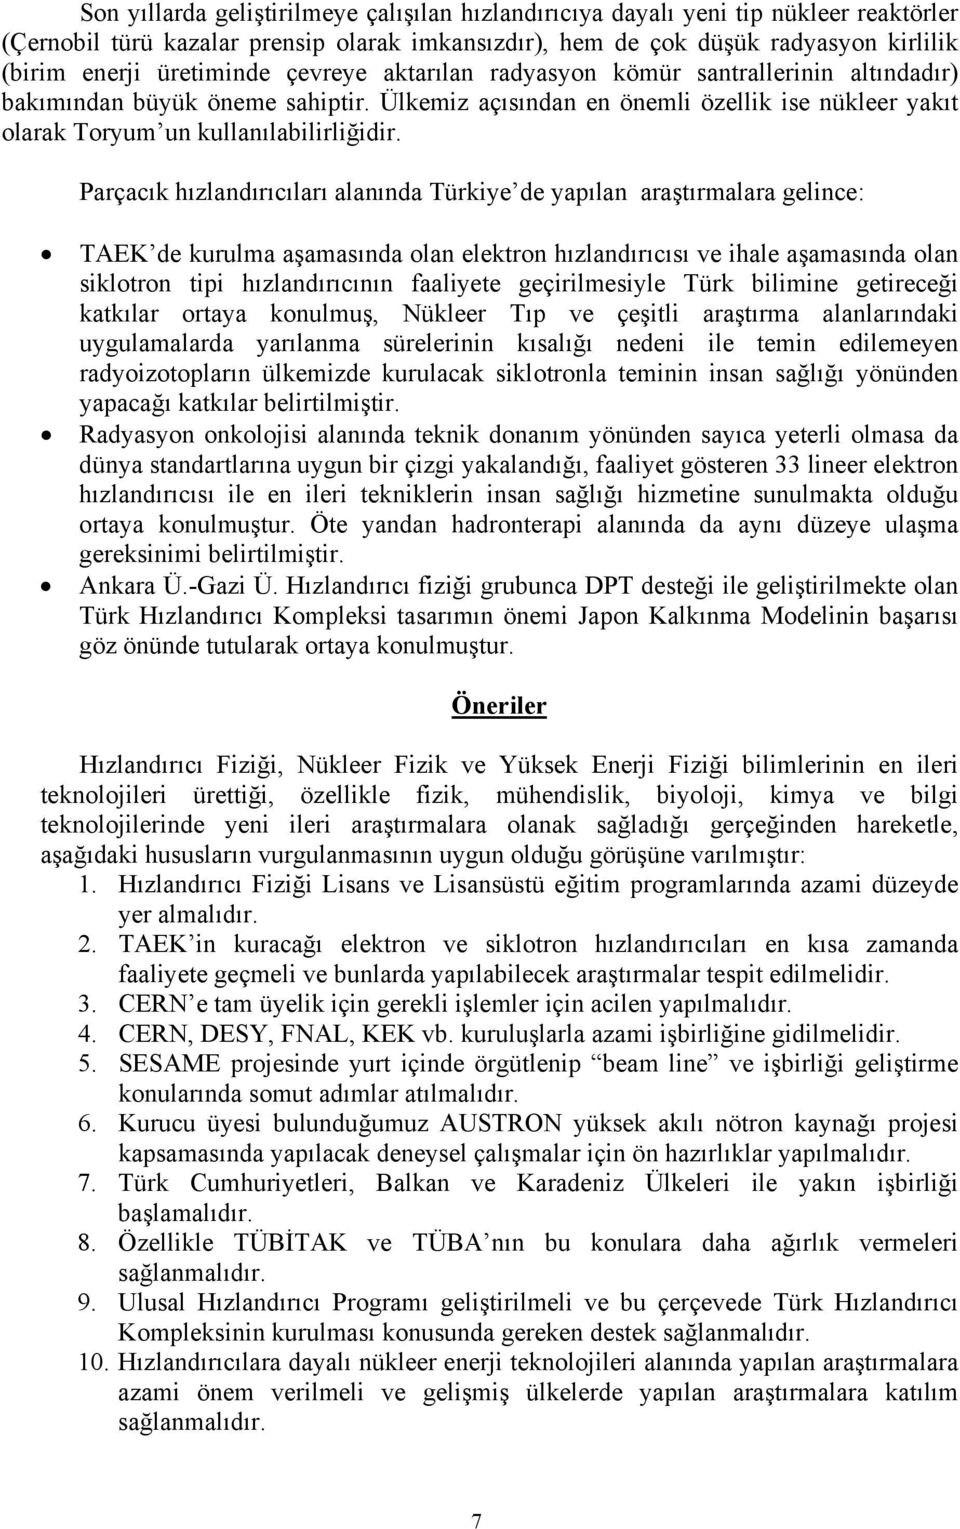 Parçacık hızlandırıcıları alanında Türkiye de yapılan araştırmalara gelince: TAEK de kurulma aşamasında olan elektron hızlandırıcısı ve ihale aşamasında olan siklotron tipi hızlandırıcının faaliyete